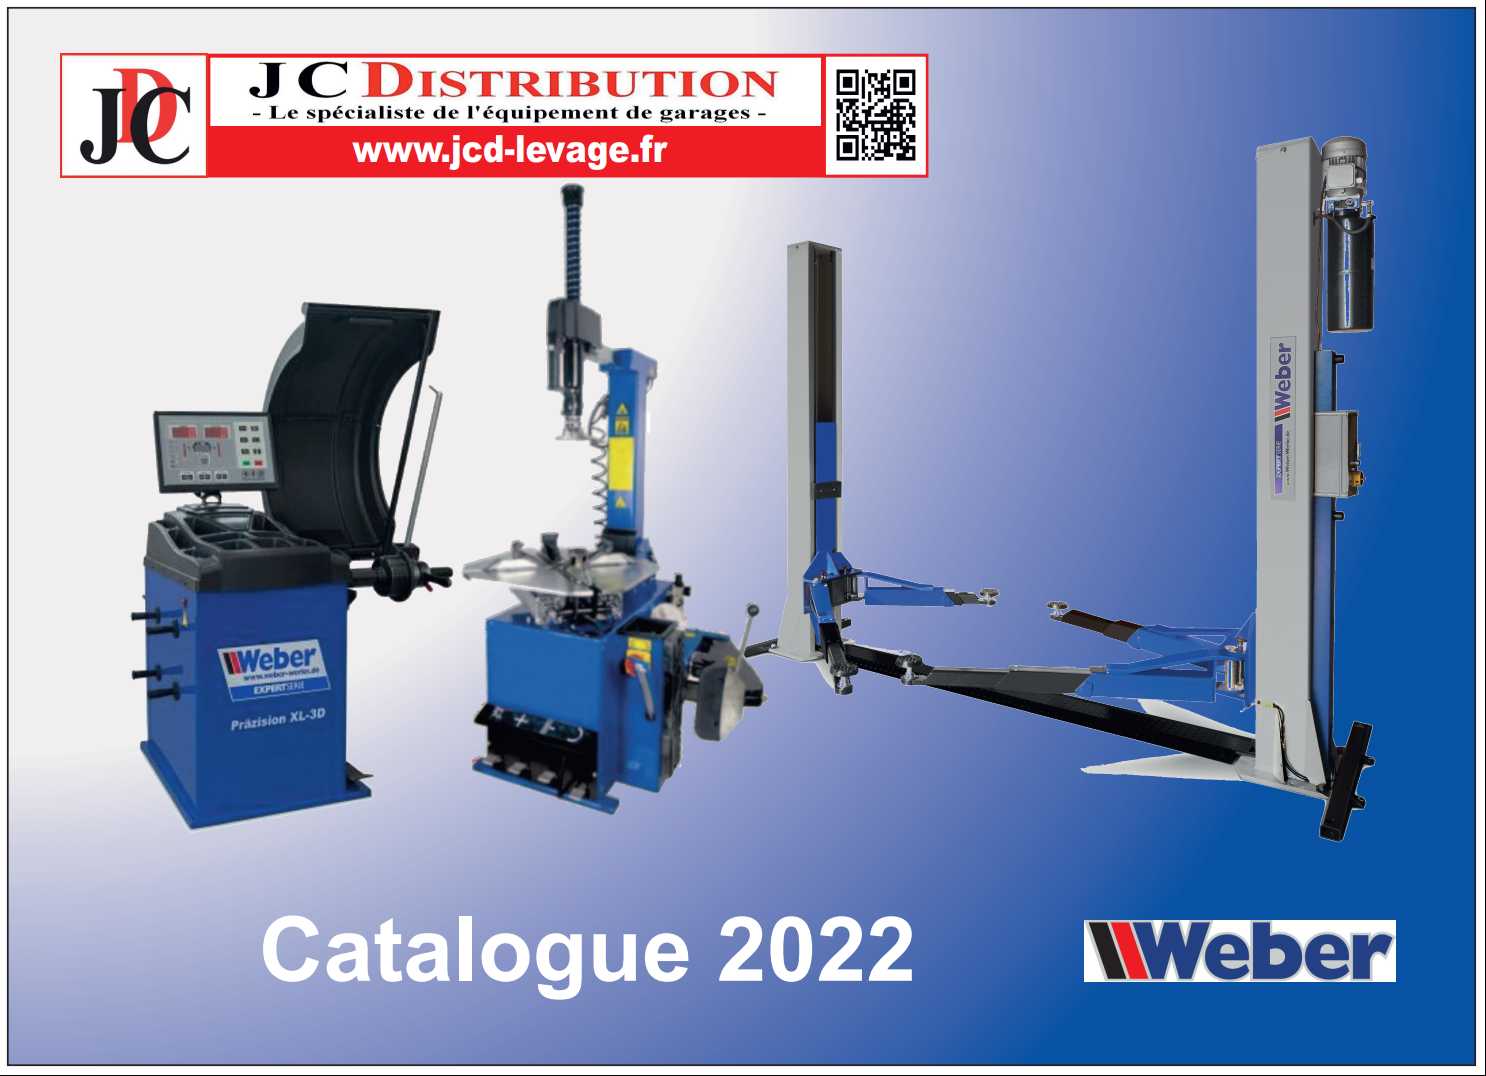 telechargement catalogue Weber 2022